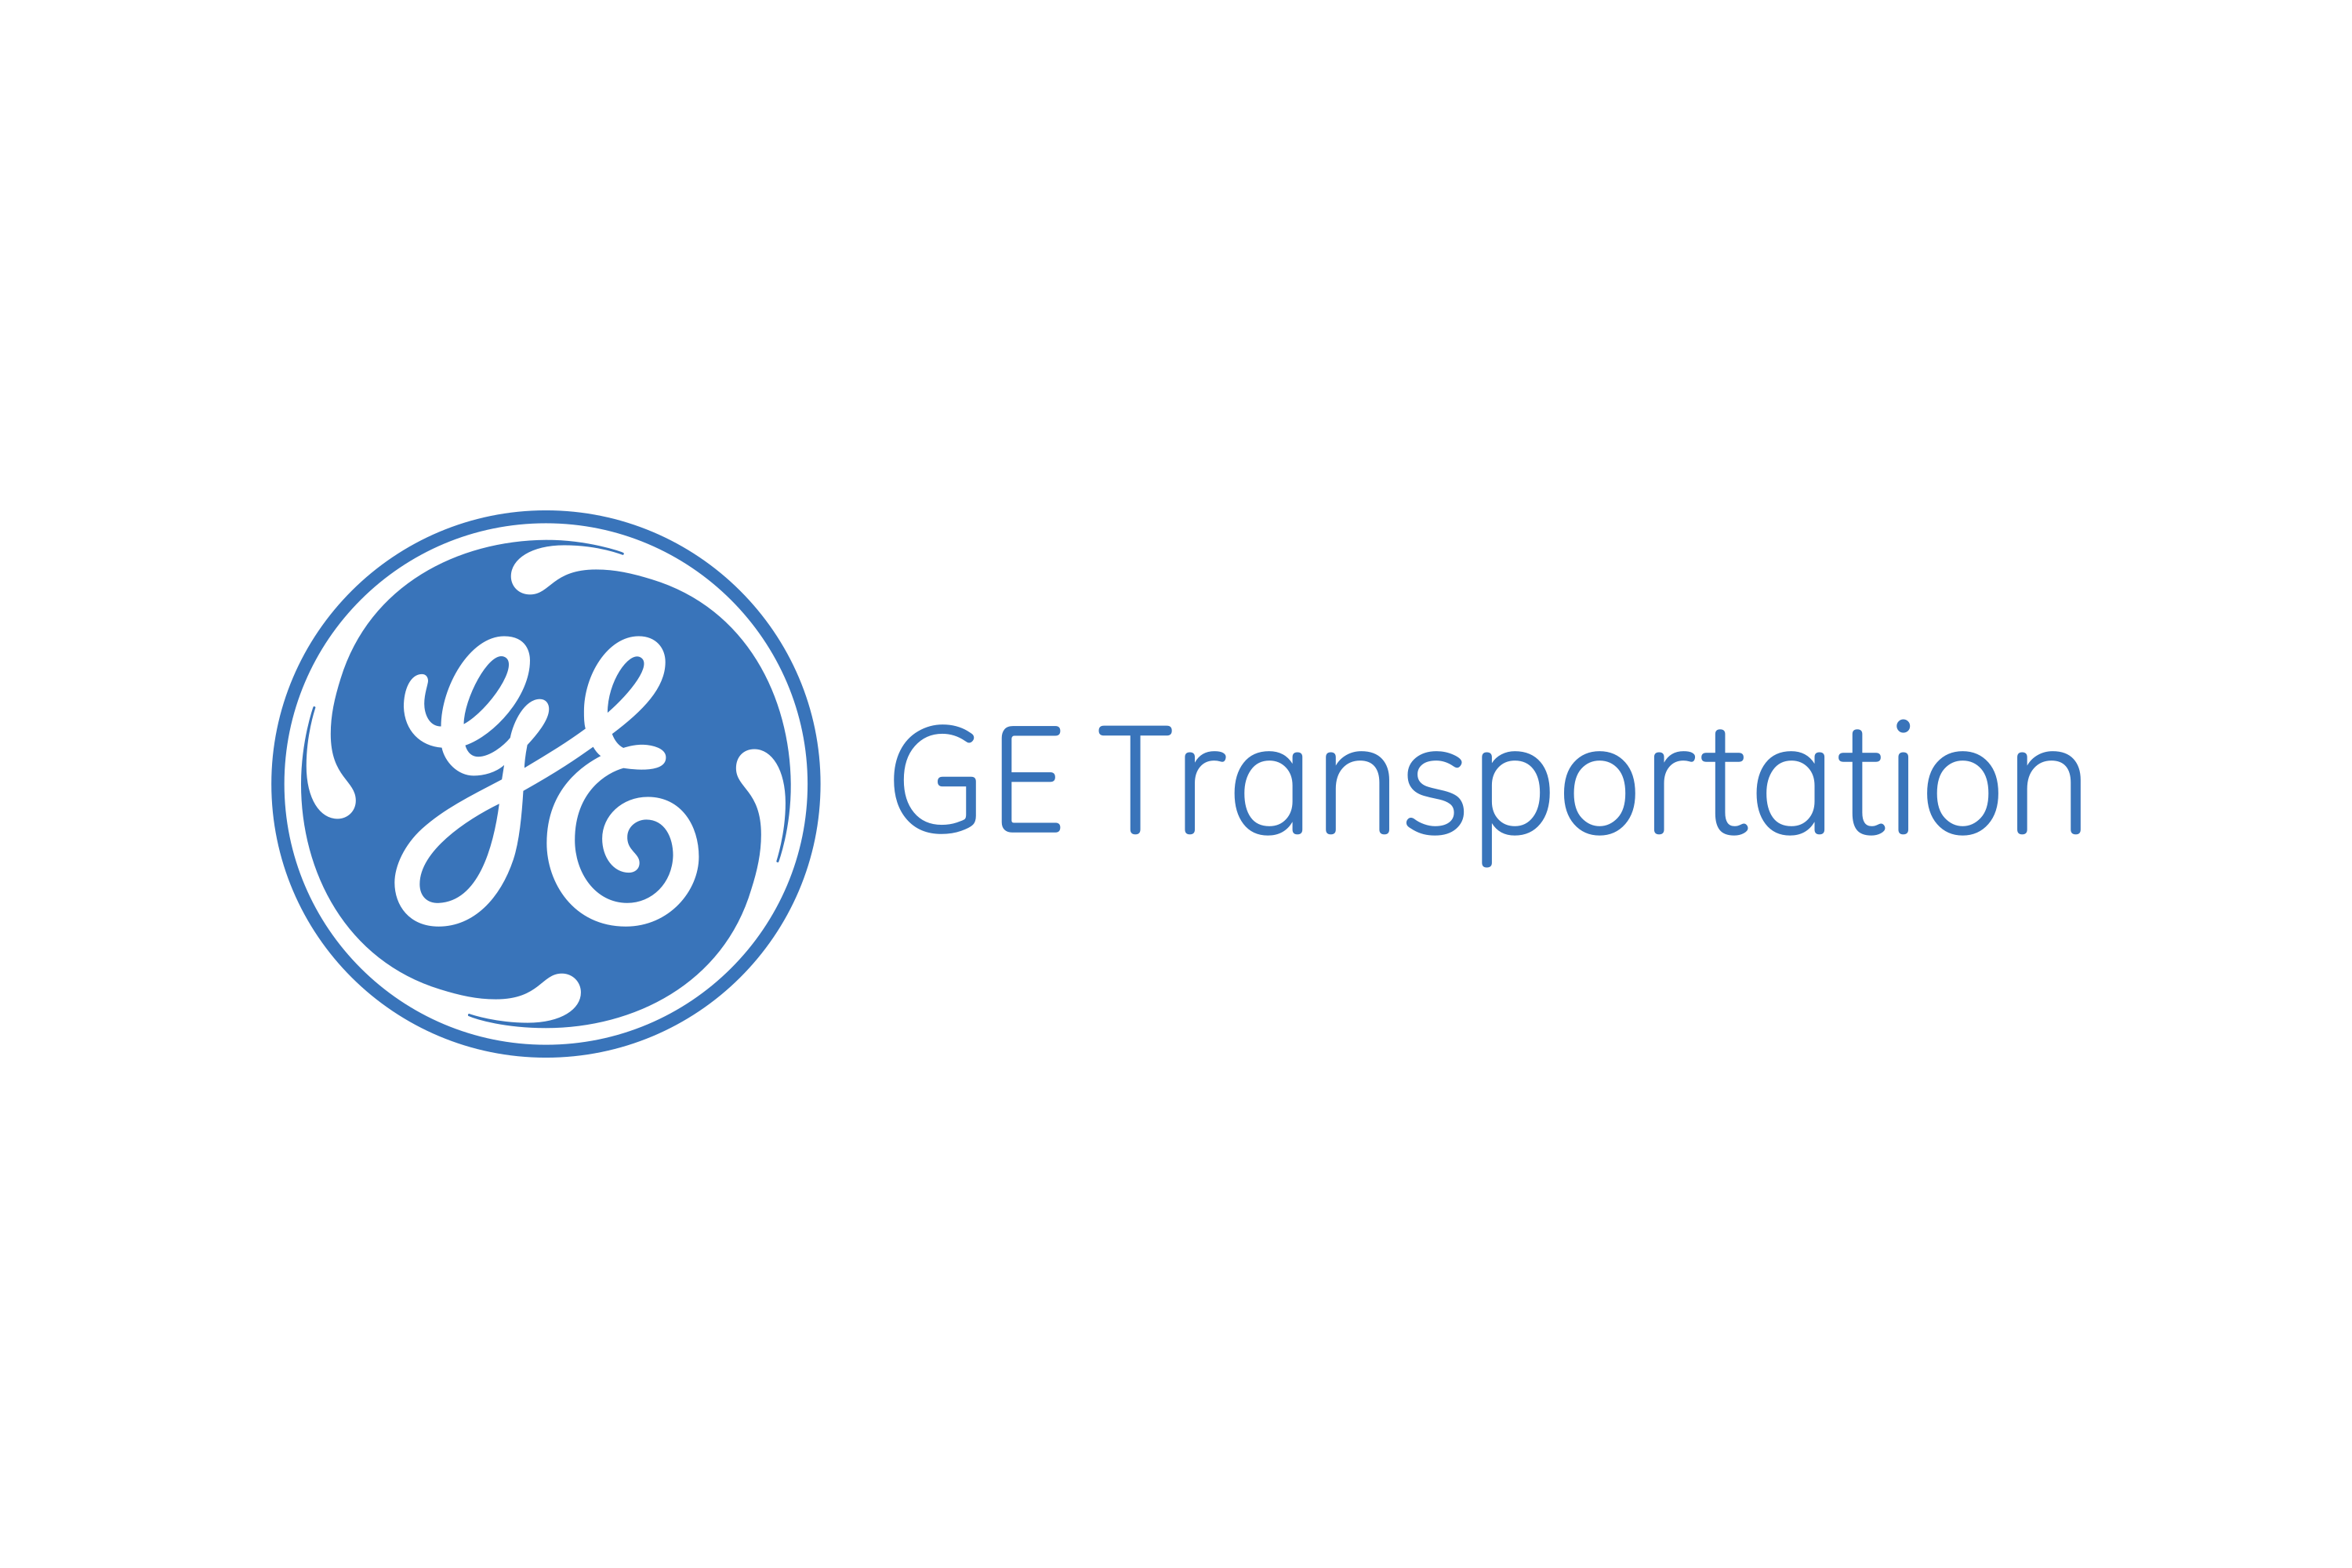 Download GE Transportation Logo in SVG Vector or PNG File Format - Logo